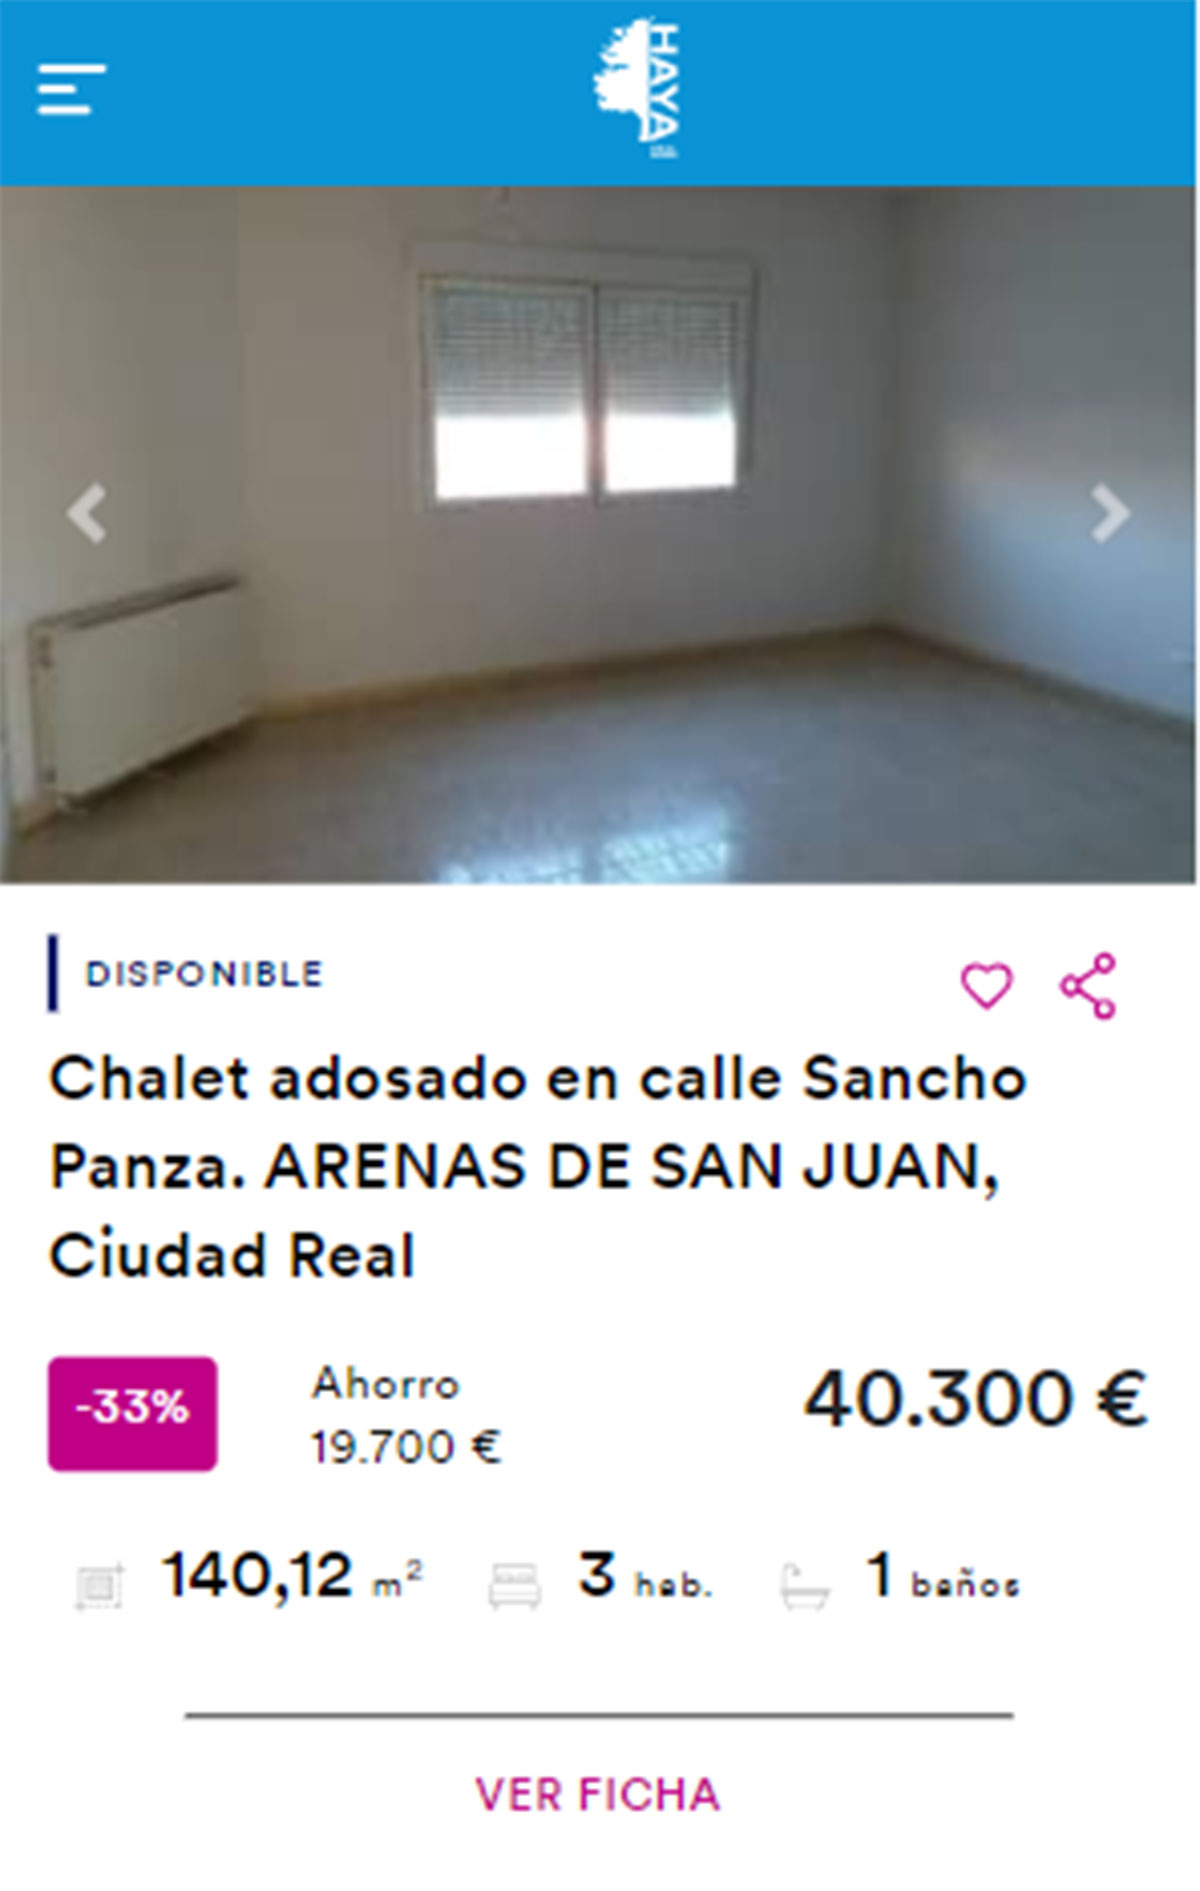 Chalet adosado en venta por 40.300 euros